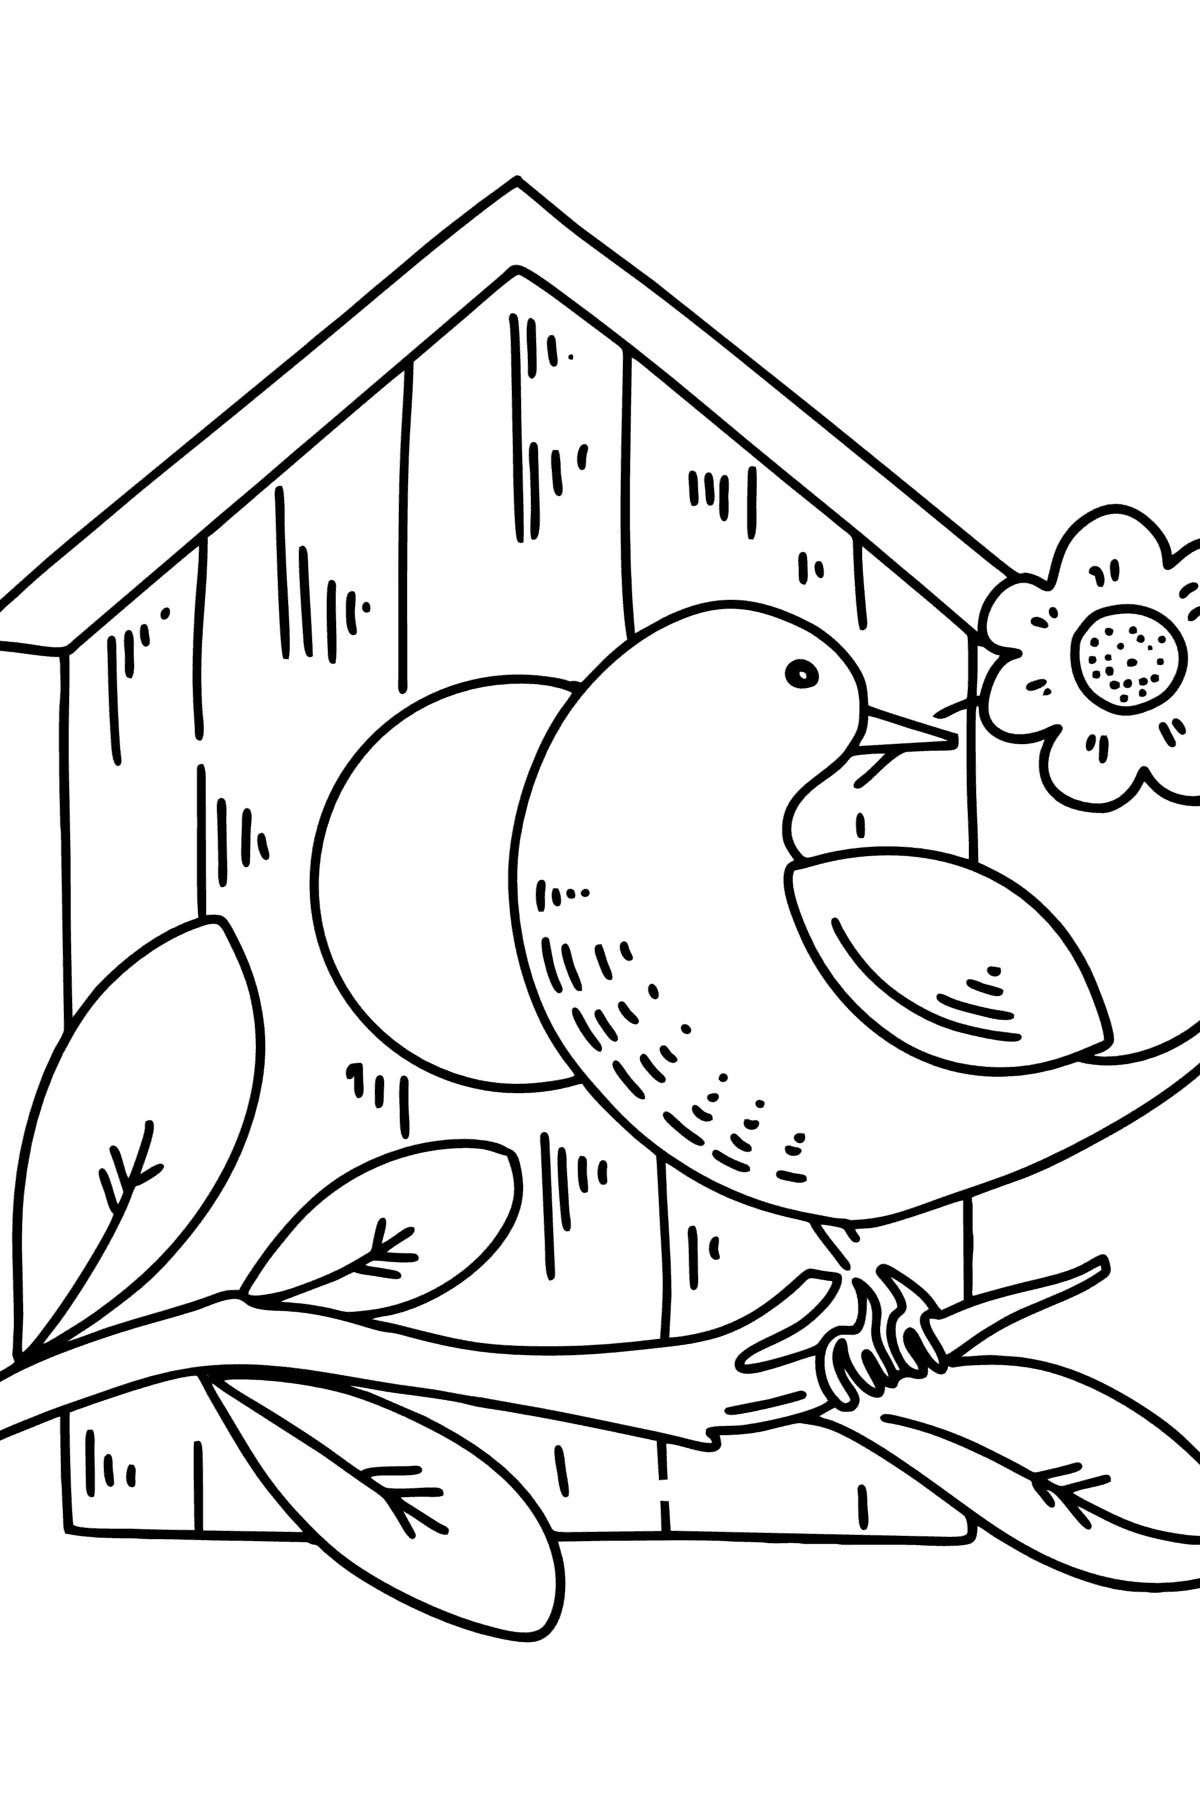 Desen de colorat starling la căsuța de păsări - Desene de colorat pentru copii